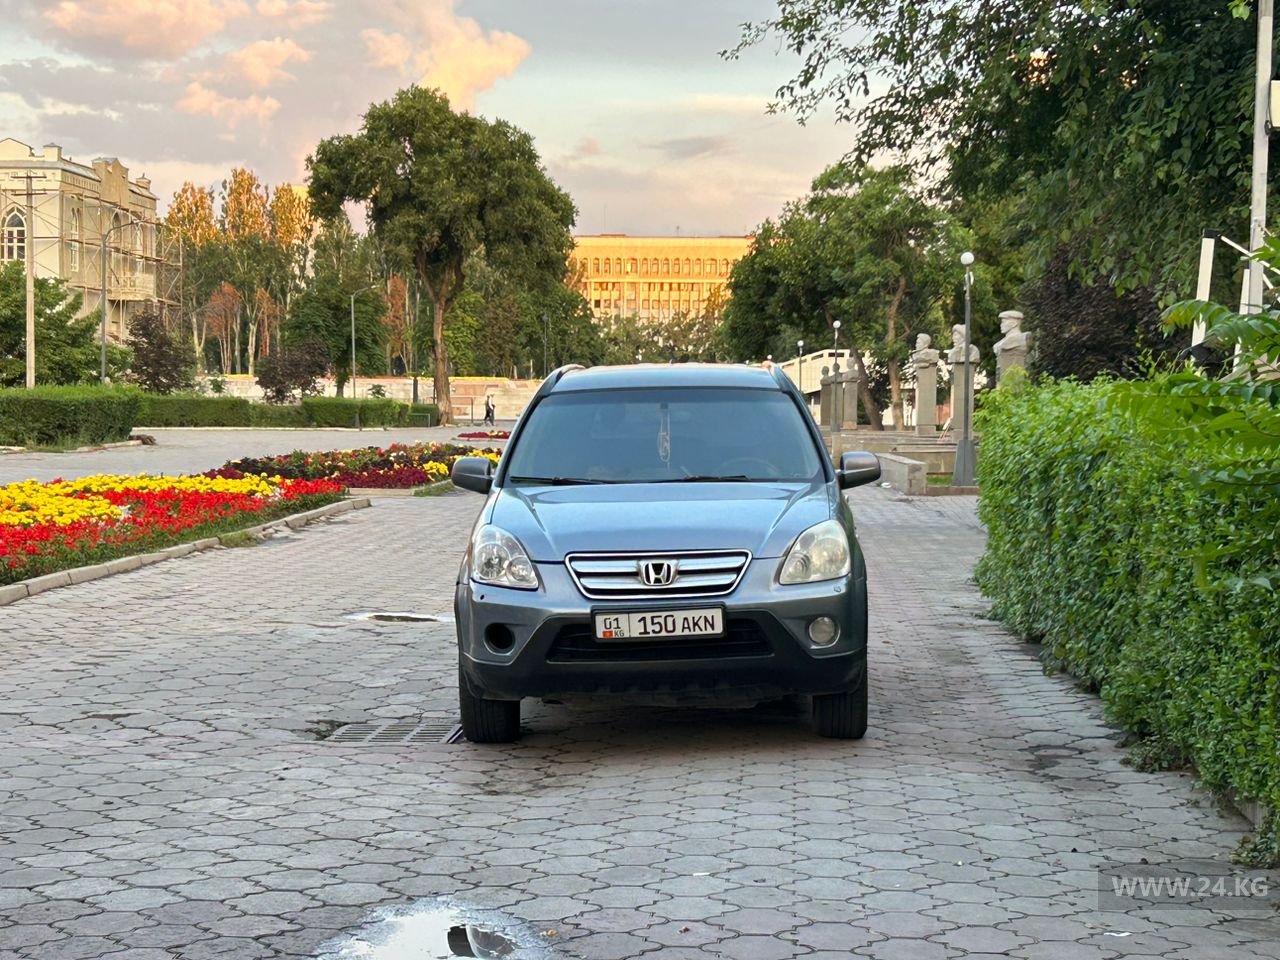 Чудаки парковки. В Дубовом парке Бишкека вновь ставят машины